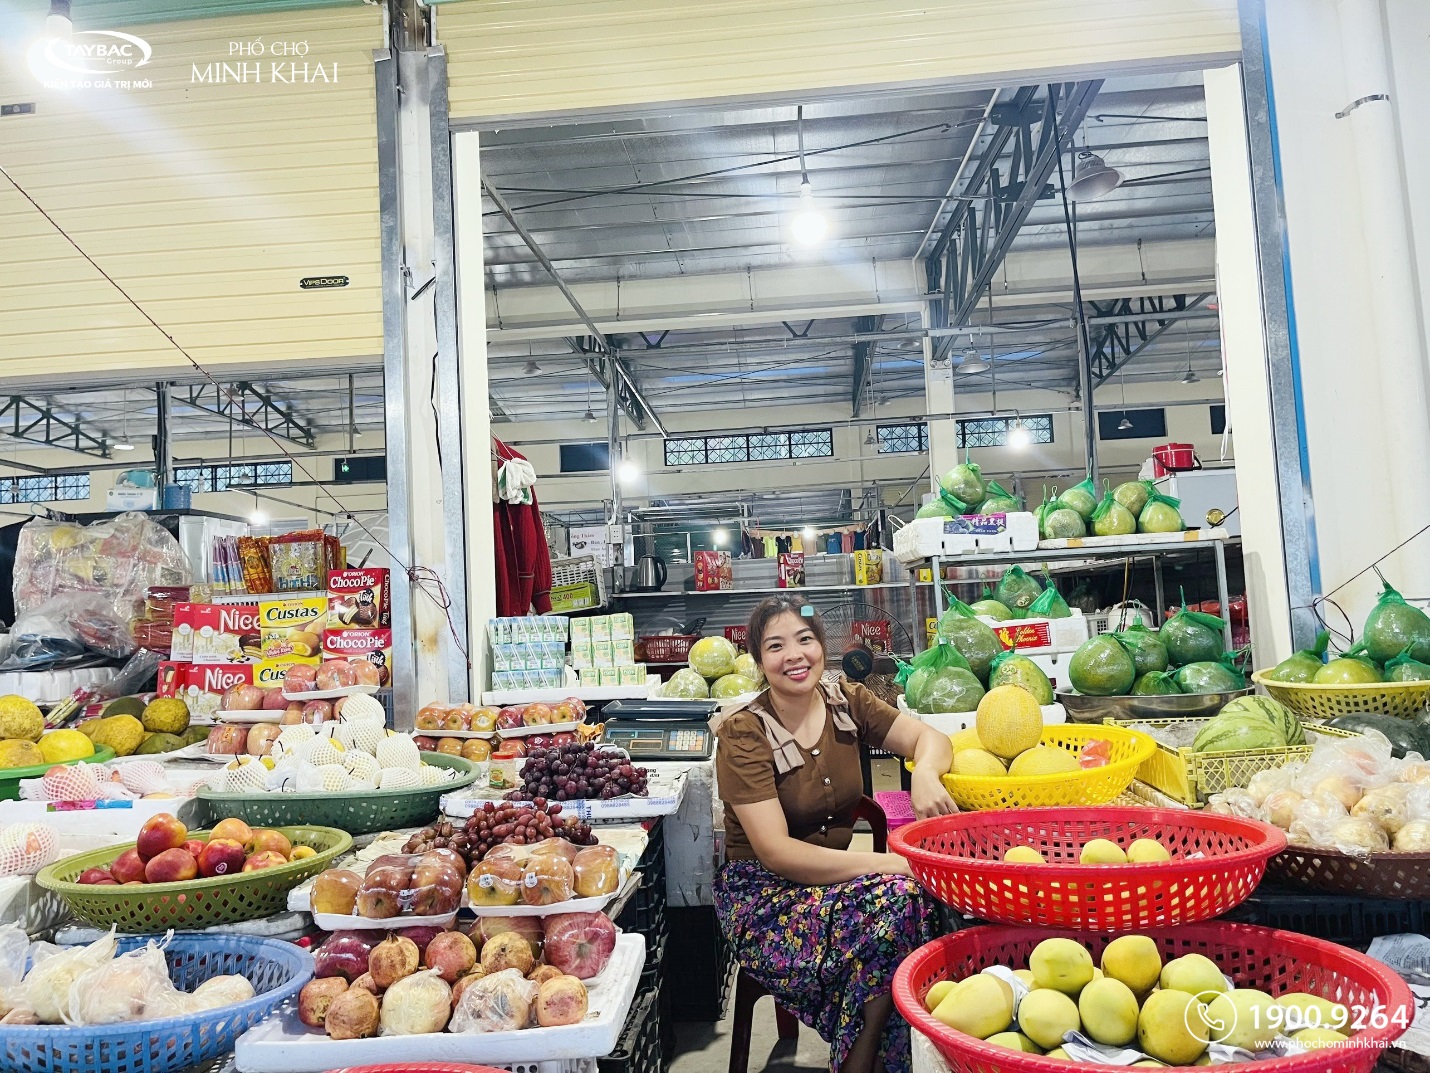 Nếu bạn muốn tìm kiếm một chợ truyền thống tại Tp. Hồ Chí Minh thì Chợ Minh là địa chỉ tuyệt vời cho bạn. Khám phá đầy đủ hình ảnh của chợ này với những gian hàng đa dạng bán đủ loại thực phẩm tươi sống từ rau củ đến thịt động vật và thực phẩm đóng hộp.